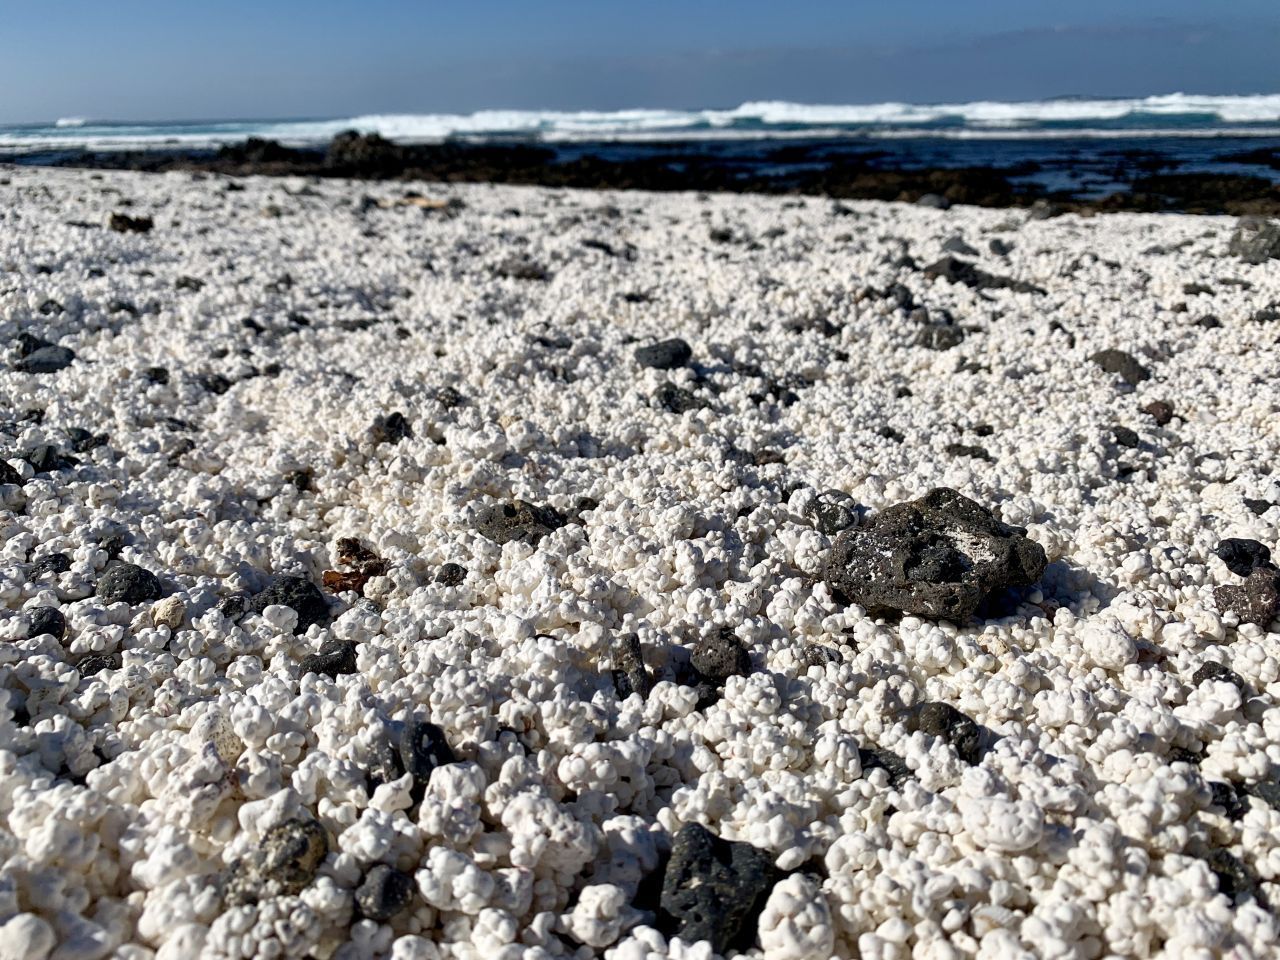 Playa del Hierro, Fuerteventura: Der Strand wurde unter dem Hashtag #popcornbeach weltberühmt. Die versteinerten Algen, die ihn bedecken, sehen aus wie der beliebte Kino-Snack. Und sind mindestens genauso begehrt. Experten schätzen, dass Besucher jeden Monat etwa 10 Kilo des weißen Belags forttragen - verbotenerweise. 
